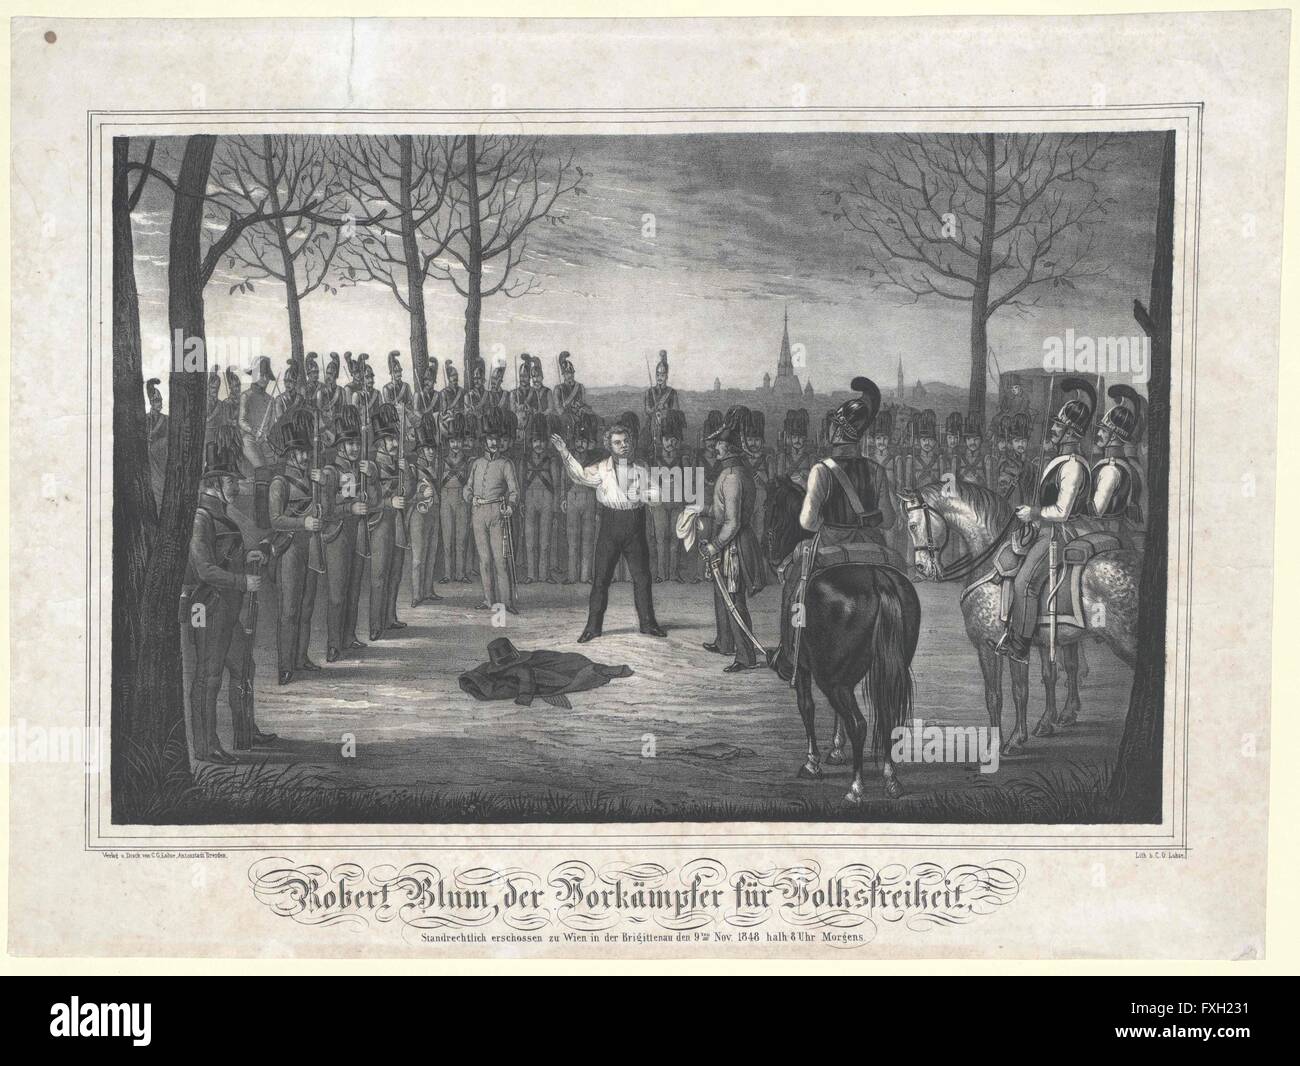 Robert Blum, der Vorkämpfer für Volksfreiheit, Standrechtlich erschossen zu Wien in der Brigittenau den 9ten Nov. 1848 halb 8 Uhr Morgens Stock Photo